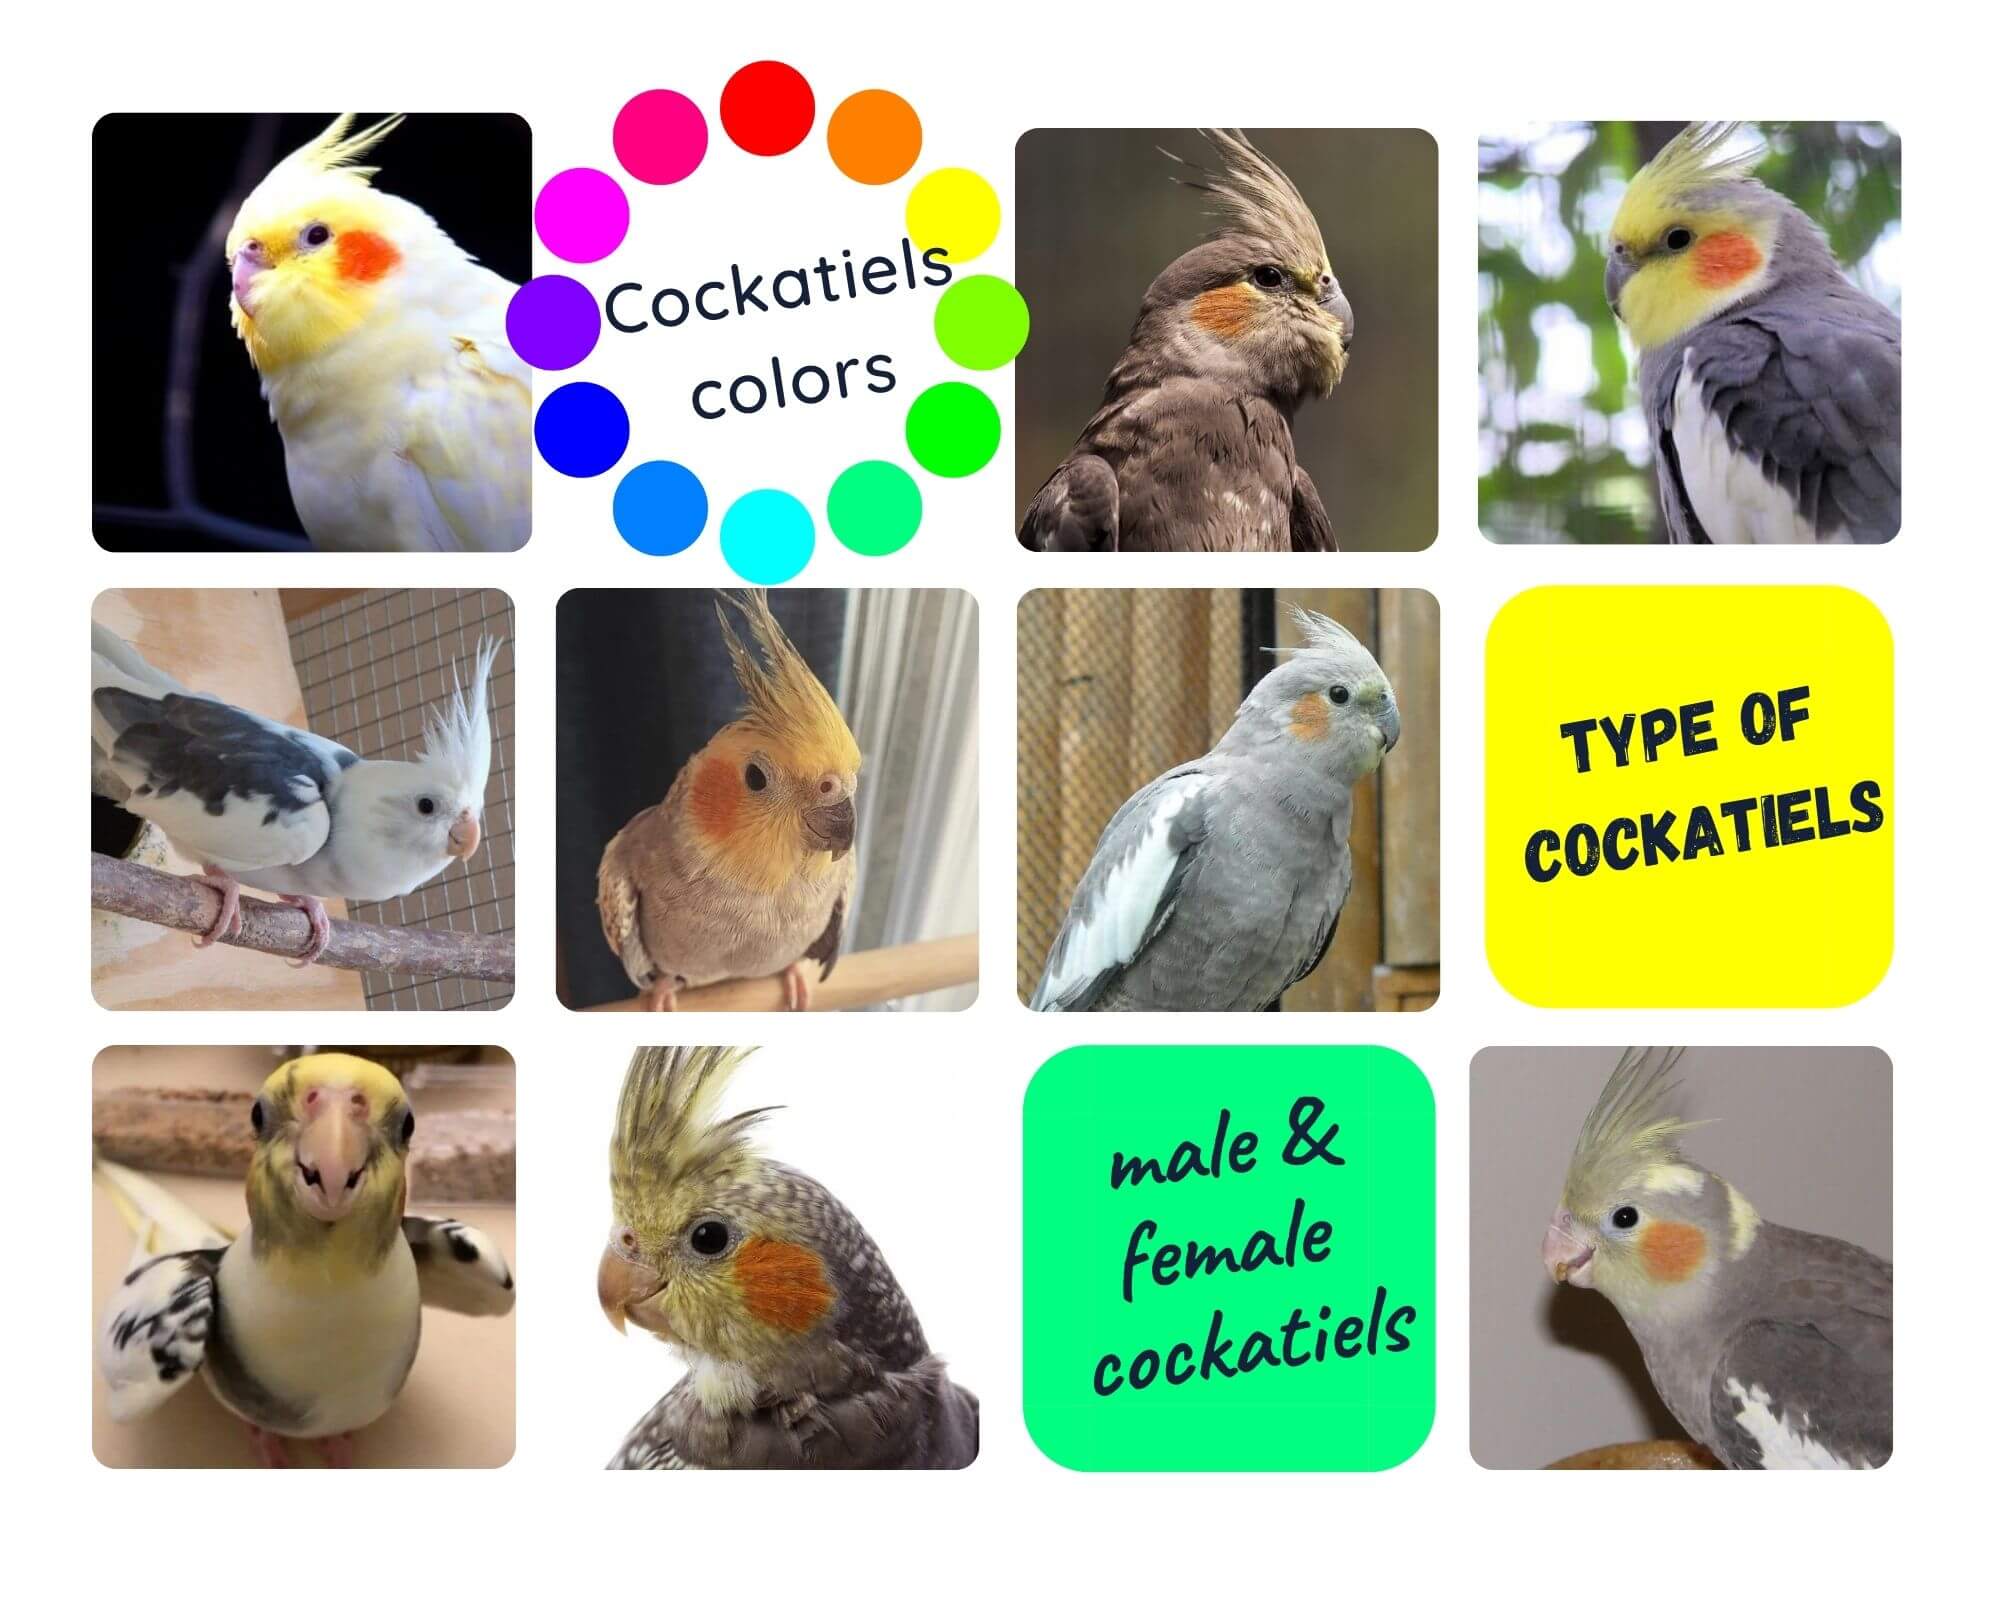 Cockatiels colors